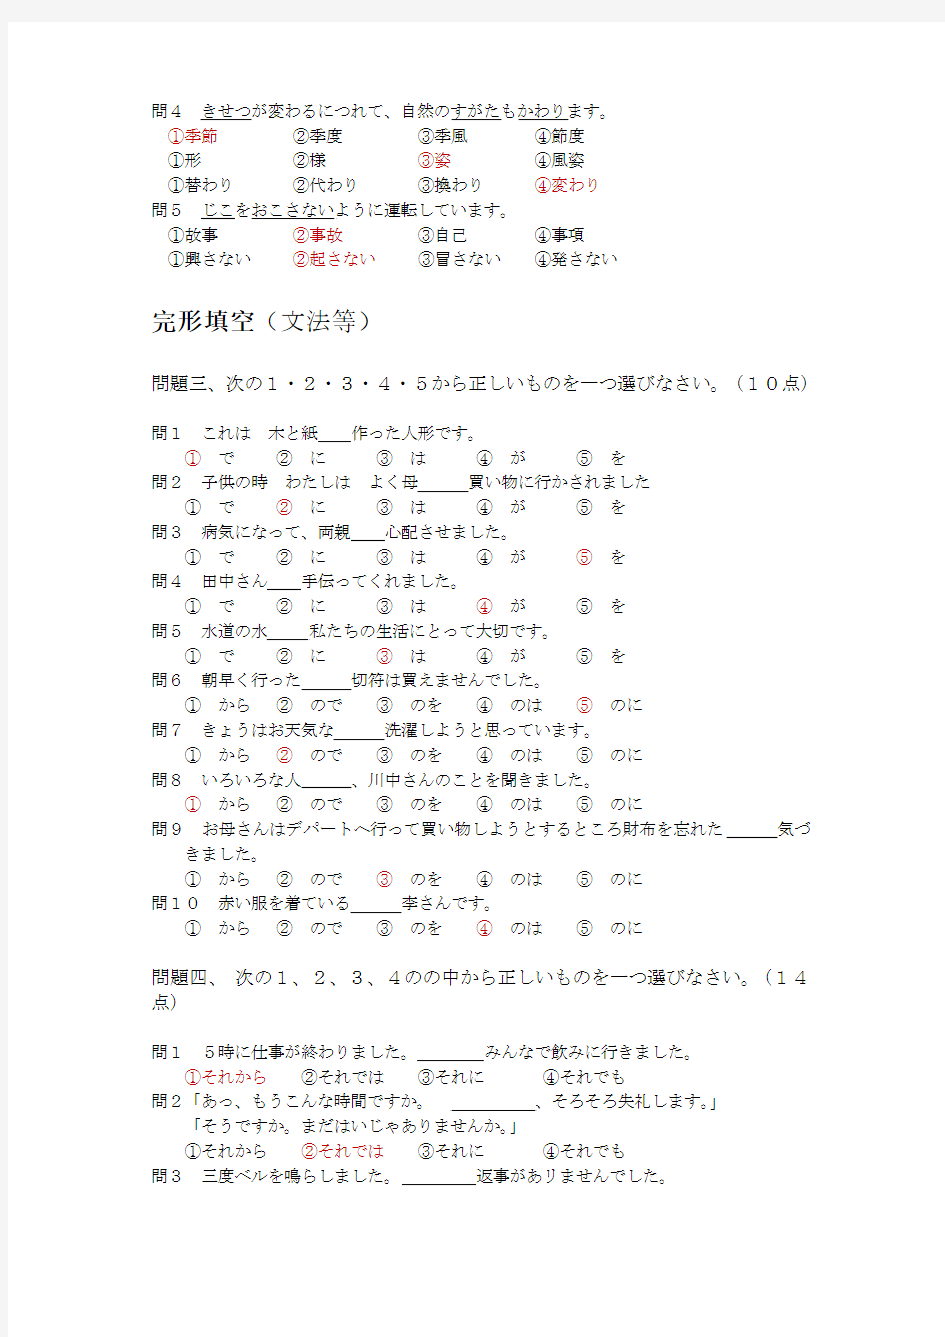 学位日语考试样题